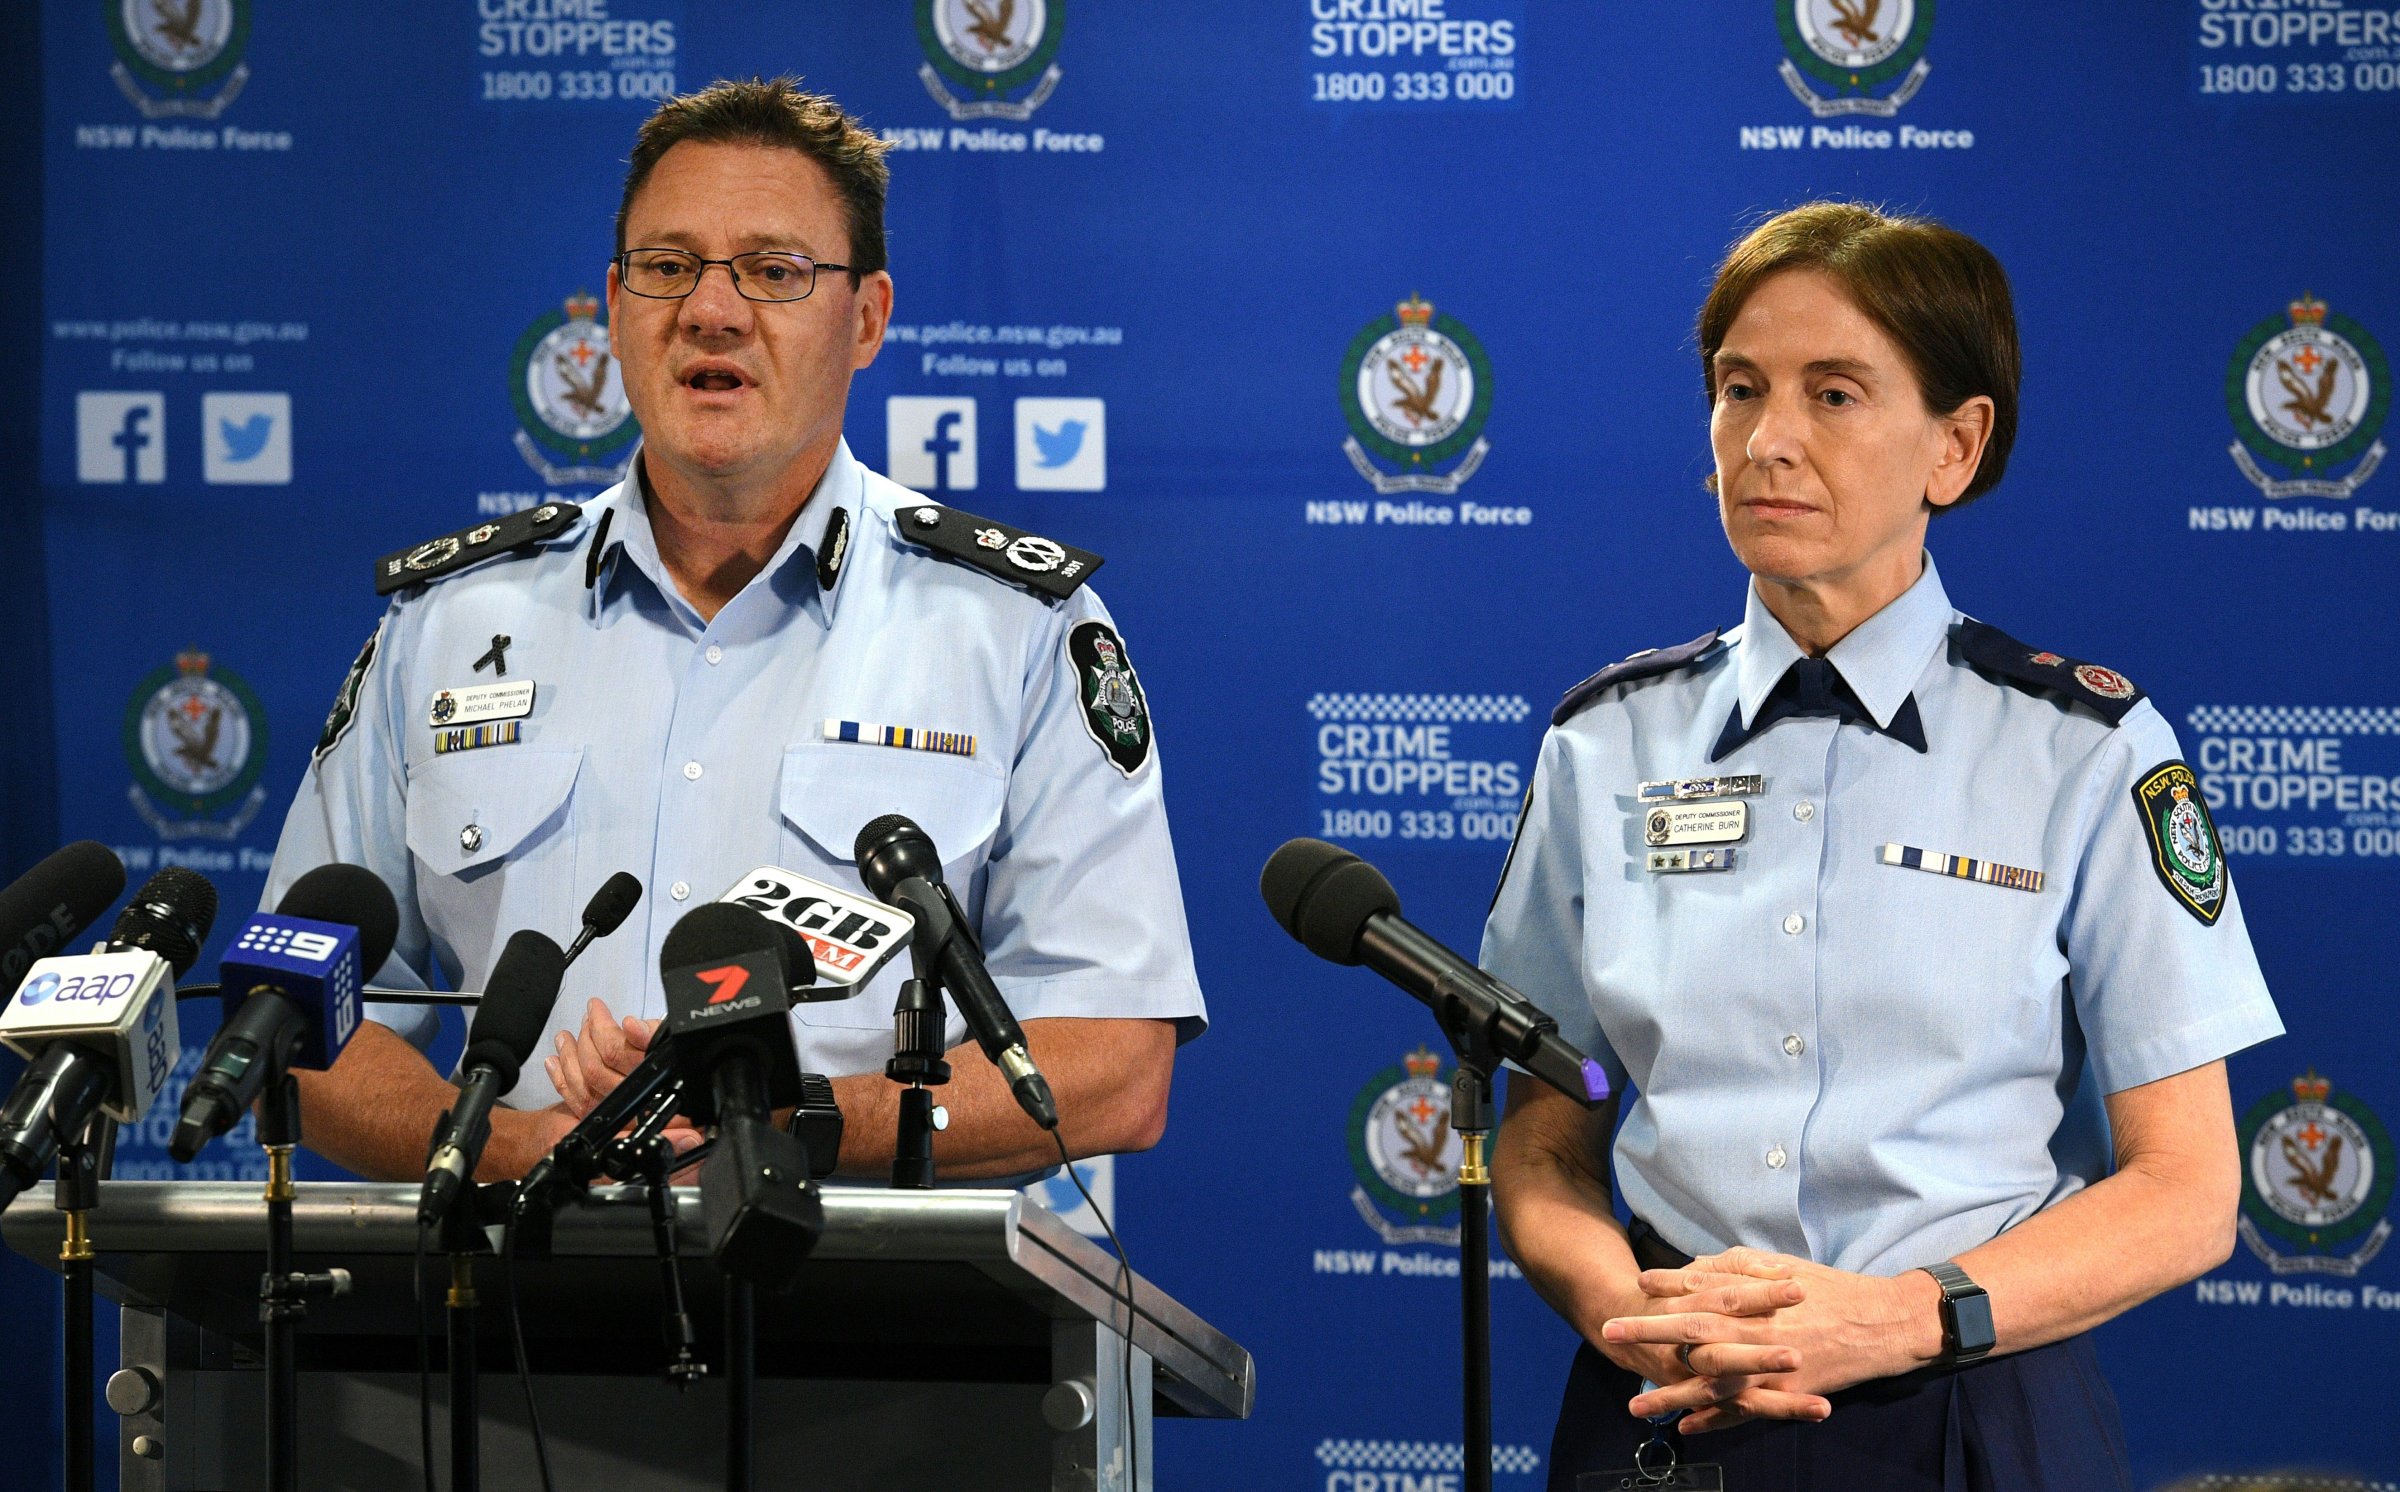 AUSTRALIA-ATTACKS-UNREST-CRIME-POLICE